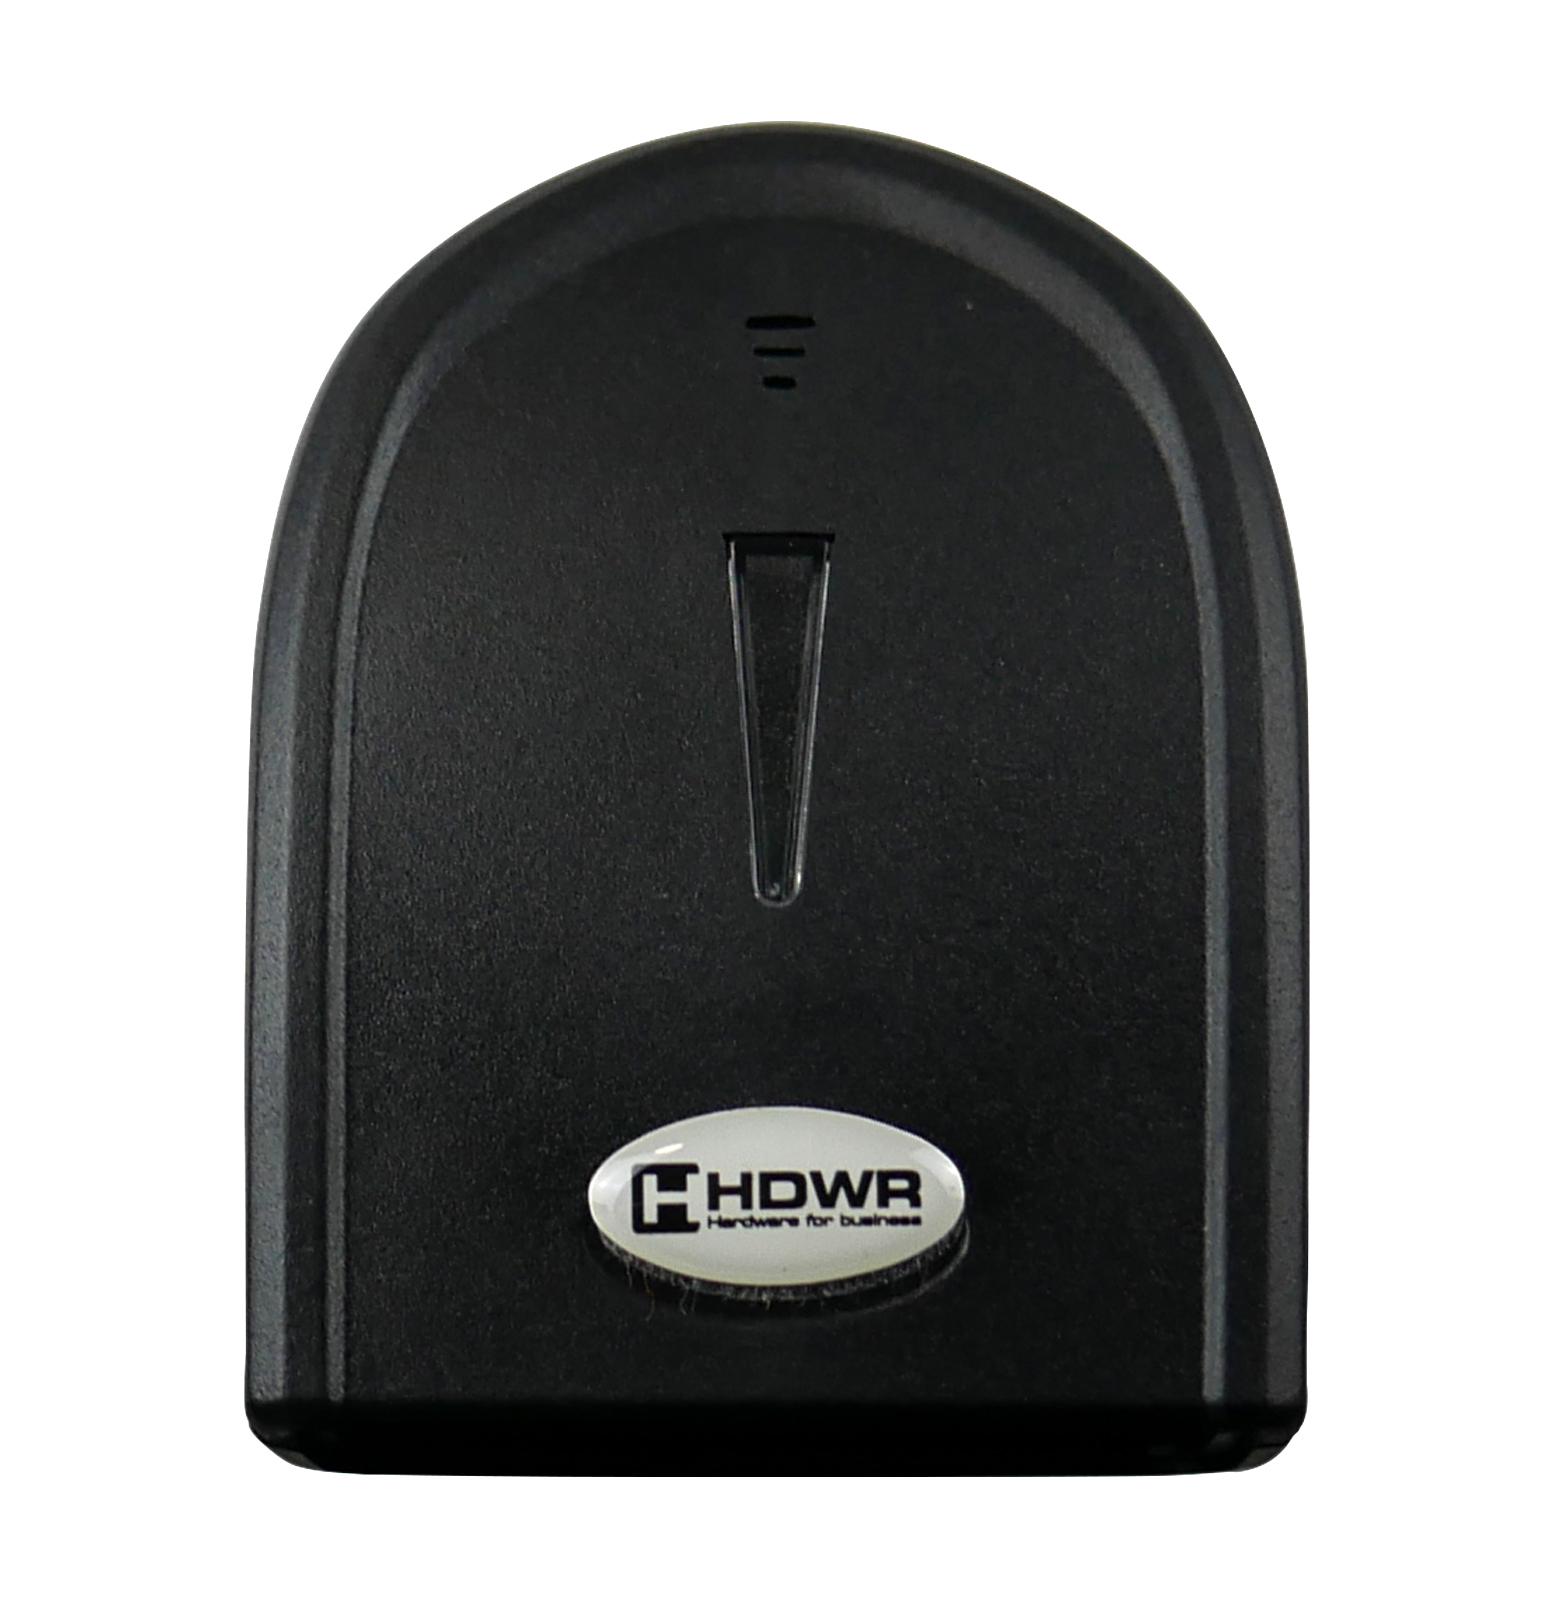 Lagerscanner, Barcodes, Handheld HDWR HD26C